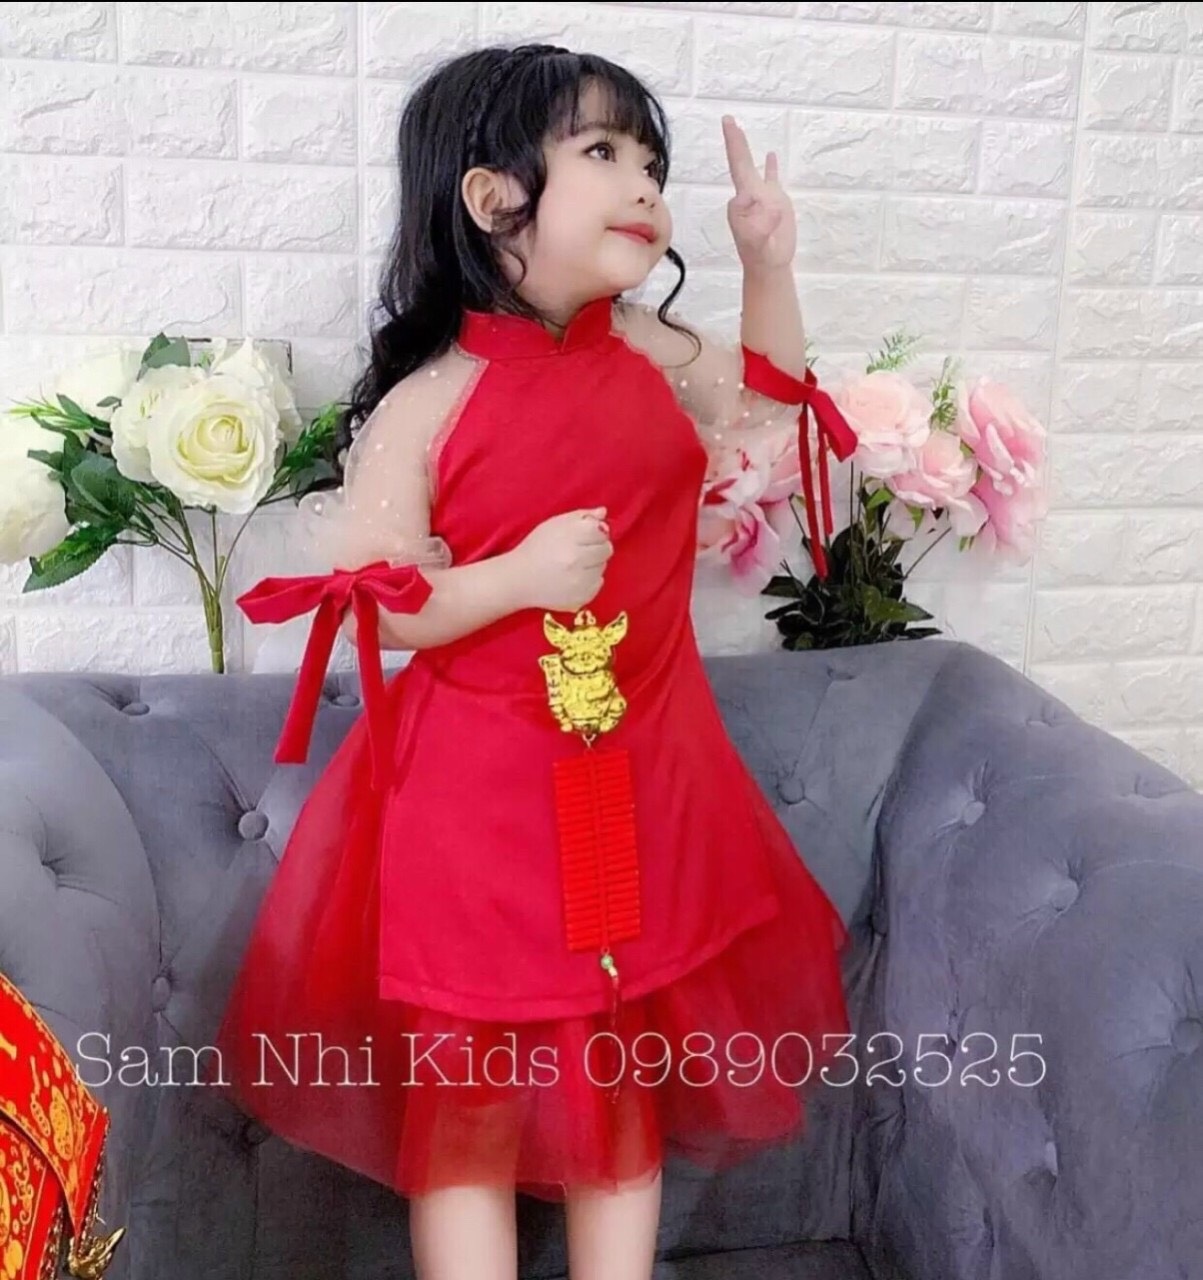 Mua Áo dài cách tân bé gái size đại từ 11 45kg tay xòe thêu sen siêu xinh  mặc lễ tết  Đỏ  Size S 14  17kg tại Nhật Hà Dress For Kids